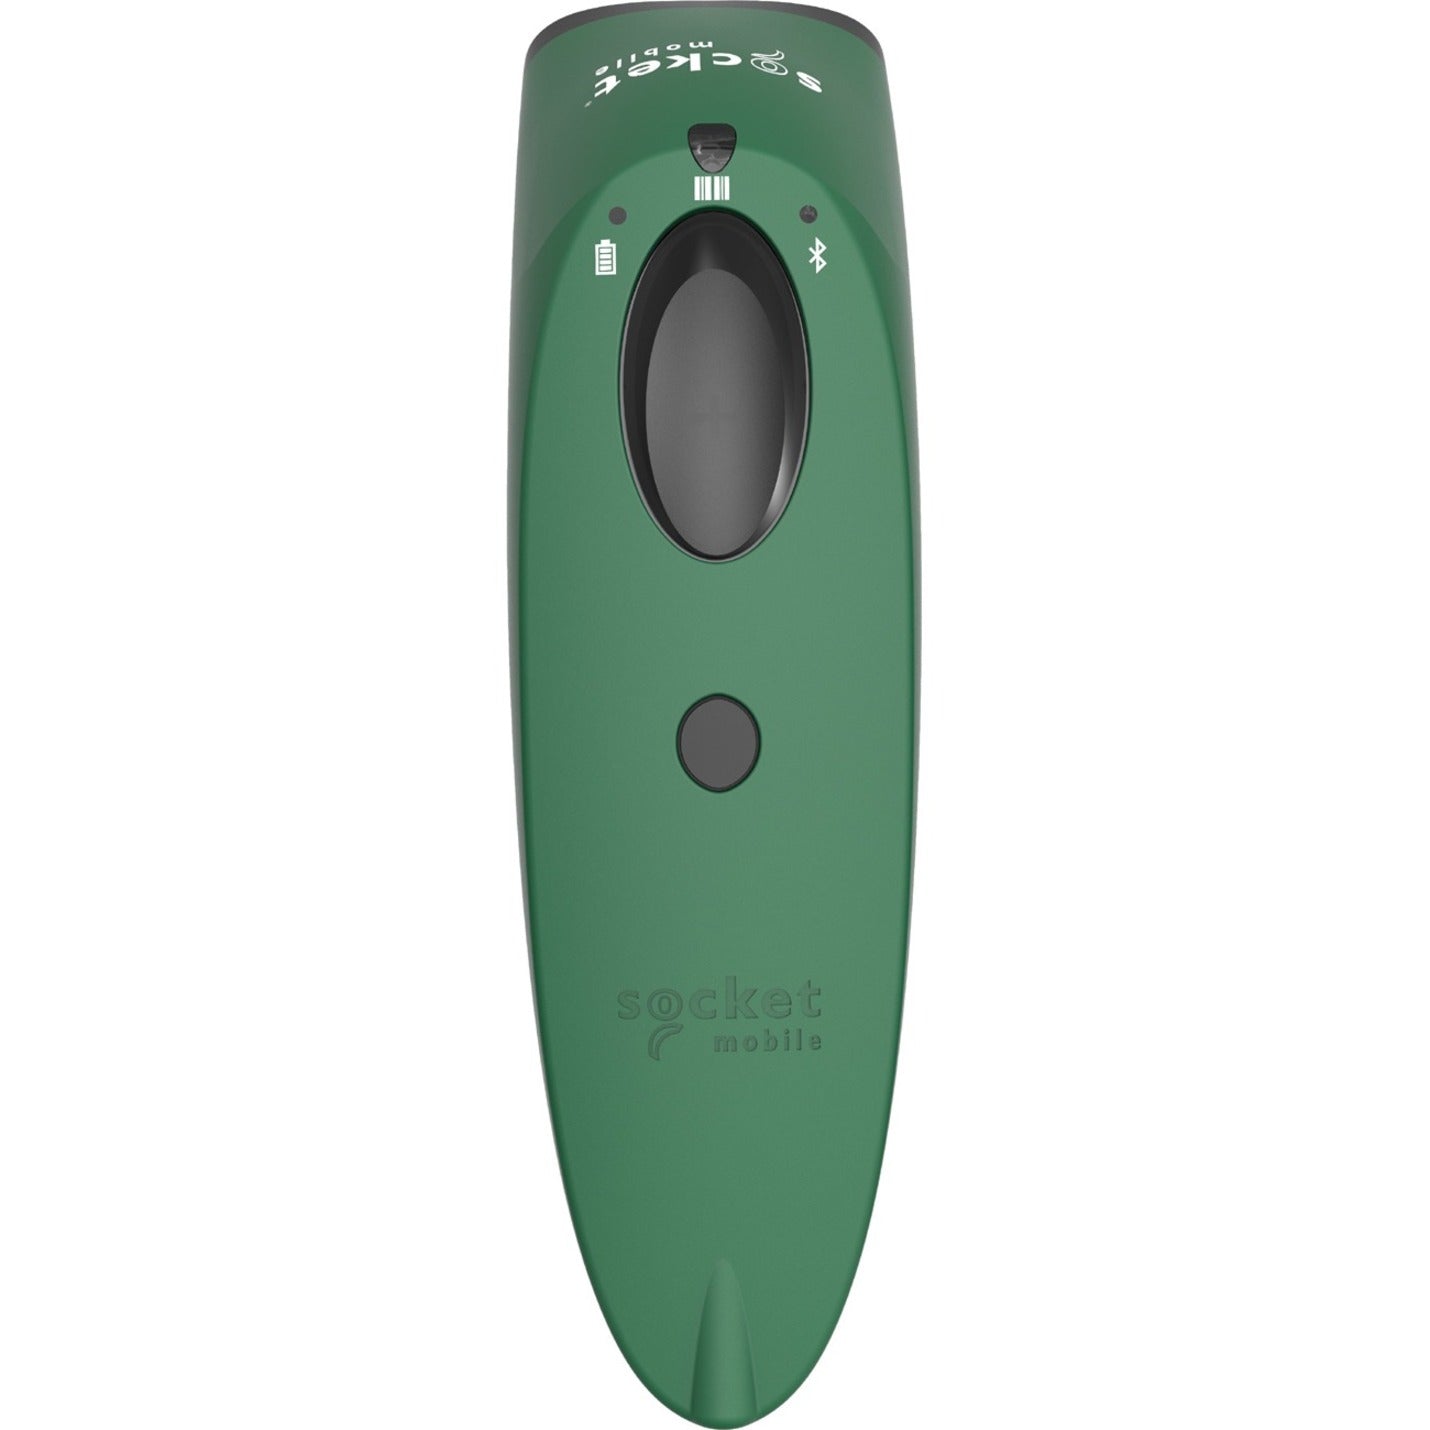 Socket Mobile SocketScan&reg; S700 Linear Barcode Scanner Green & White Charging Dock